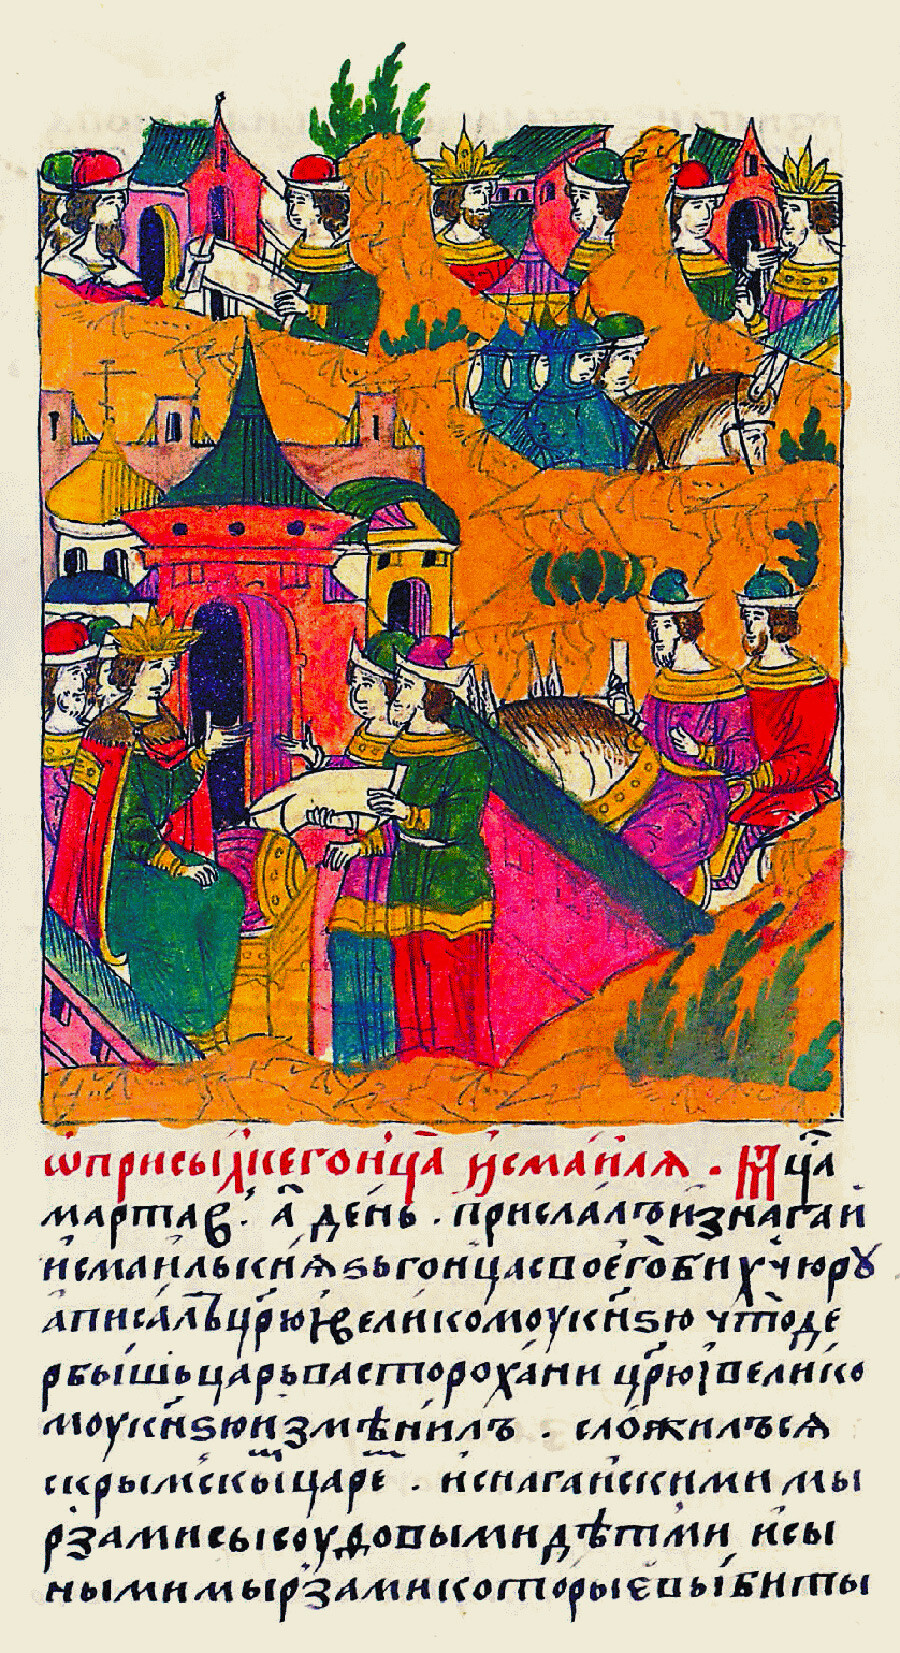 Envoyé de la Horde Nogaï au tsar, fragment de la Chronique illustrée d'Ivan le Terrible
